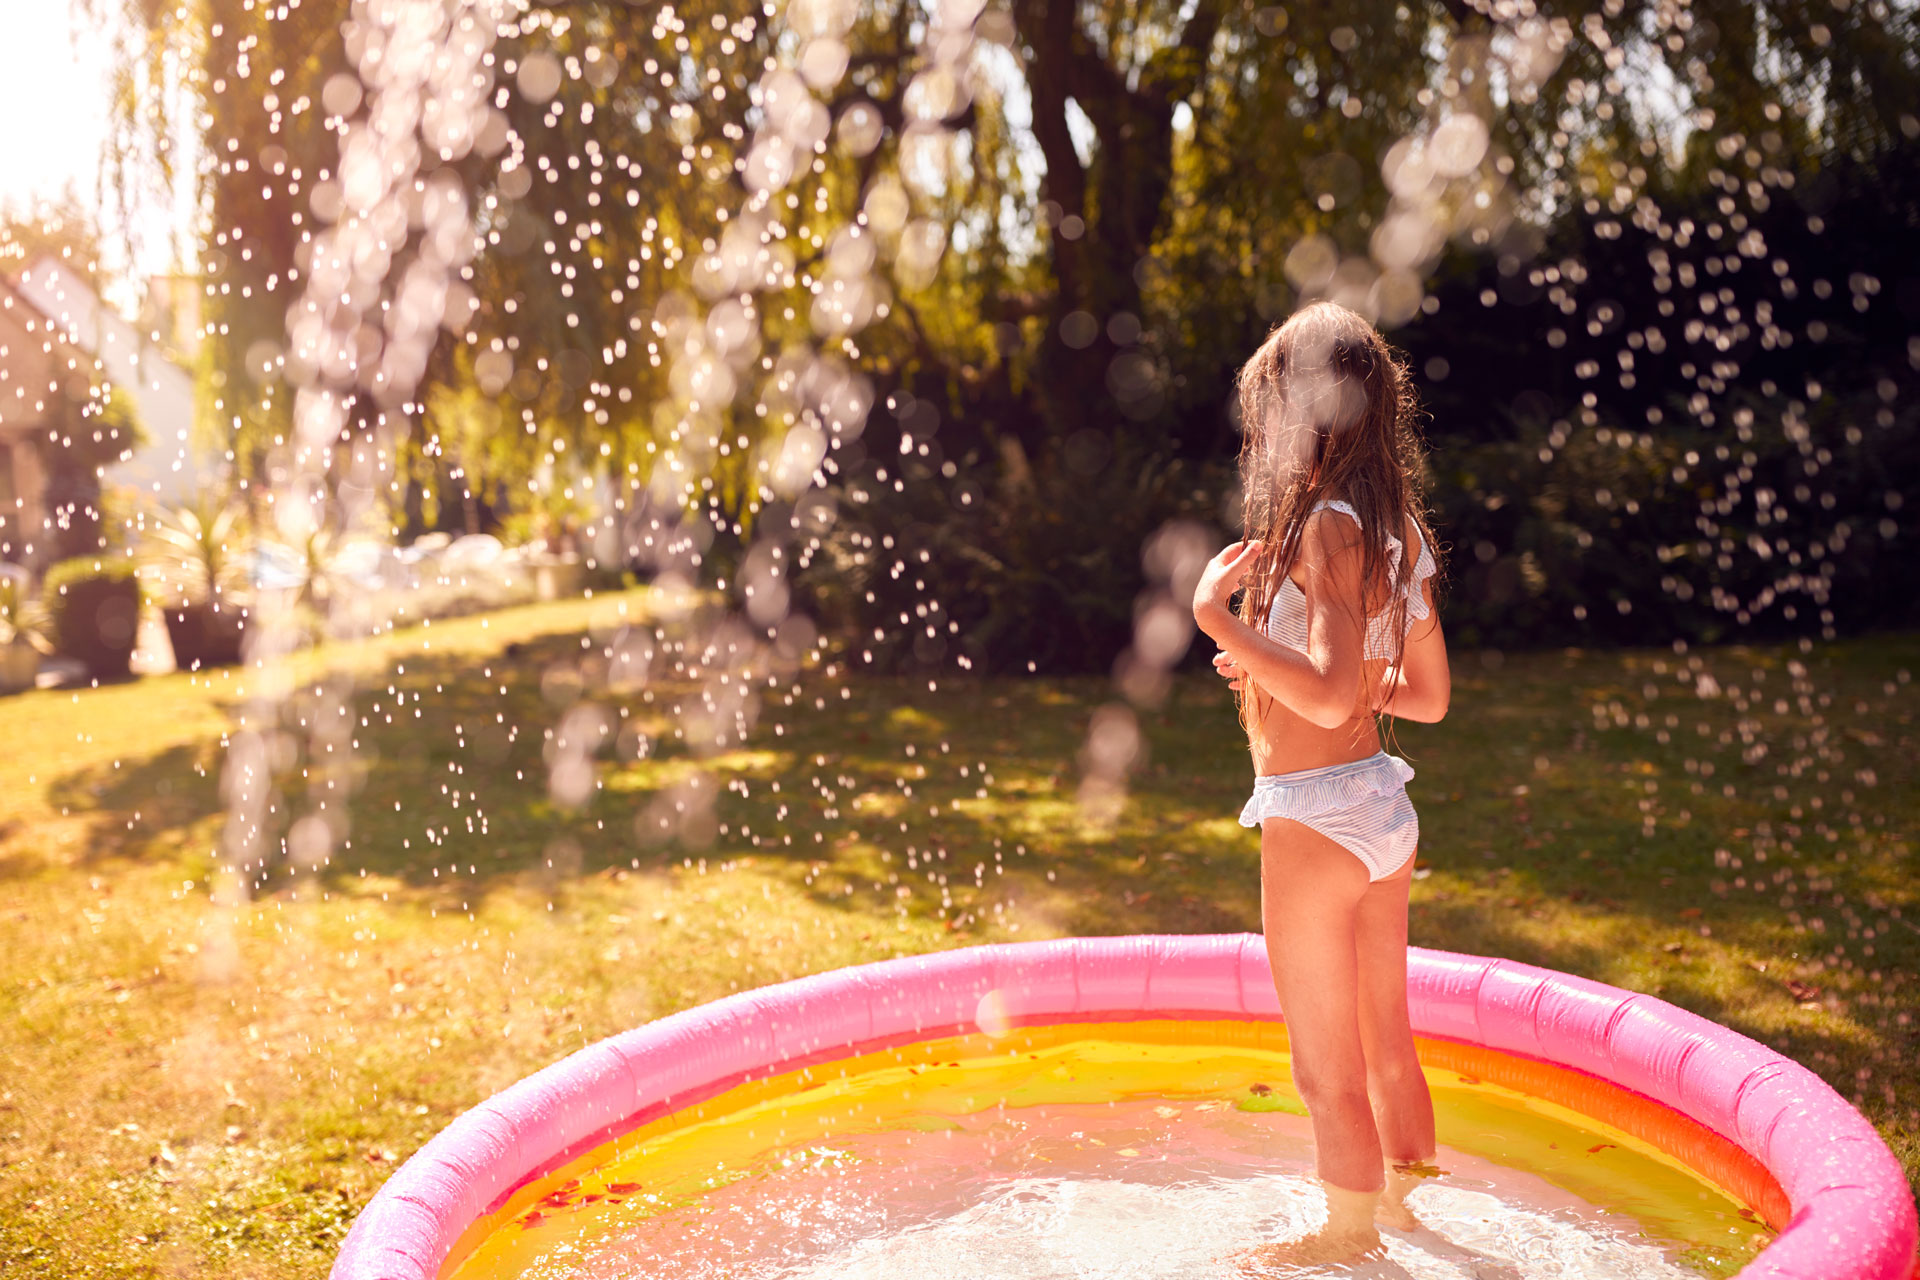 Vivi il tuo giardino in tranquillità, come questa bambina che può giocare facendo il bagno nella piscinetta.